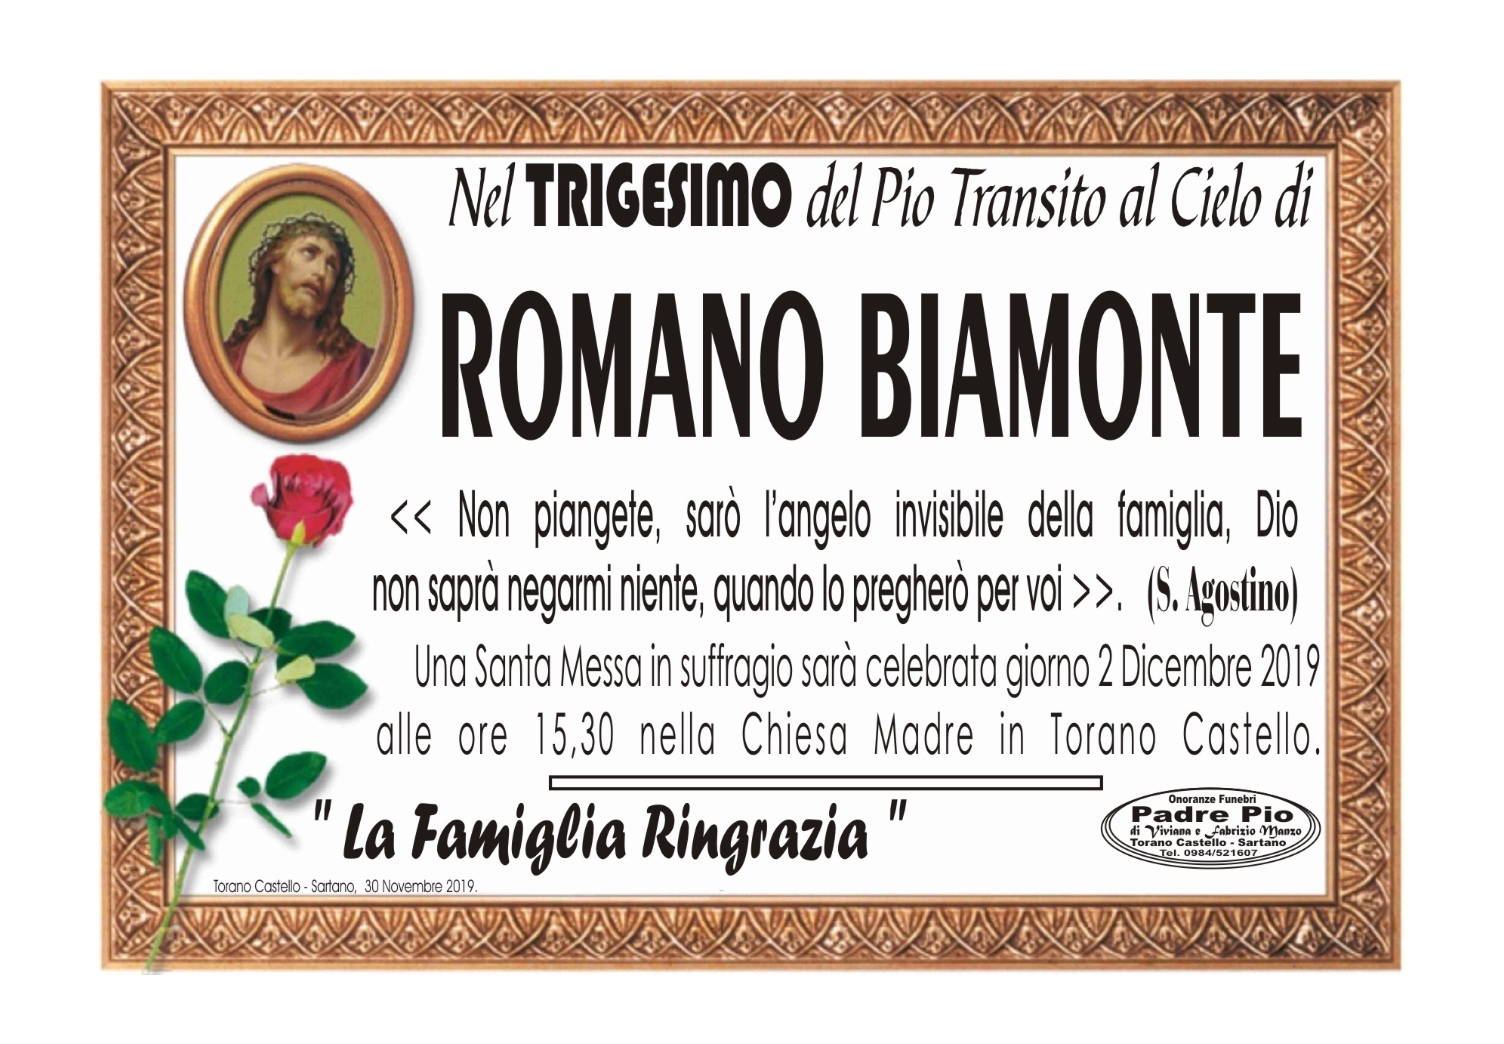 Romano Biamonte